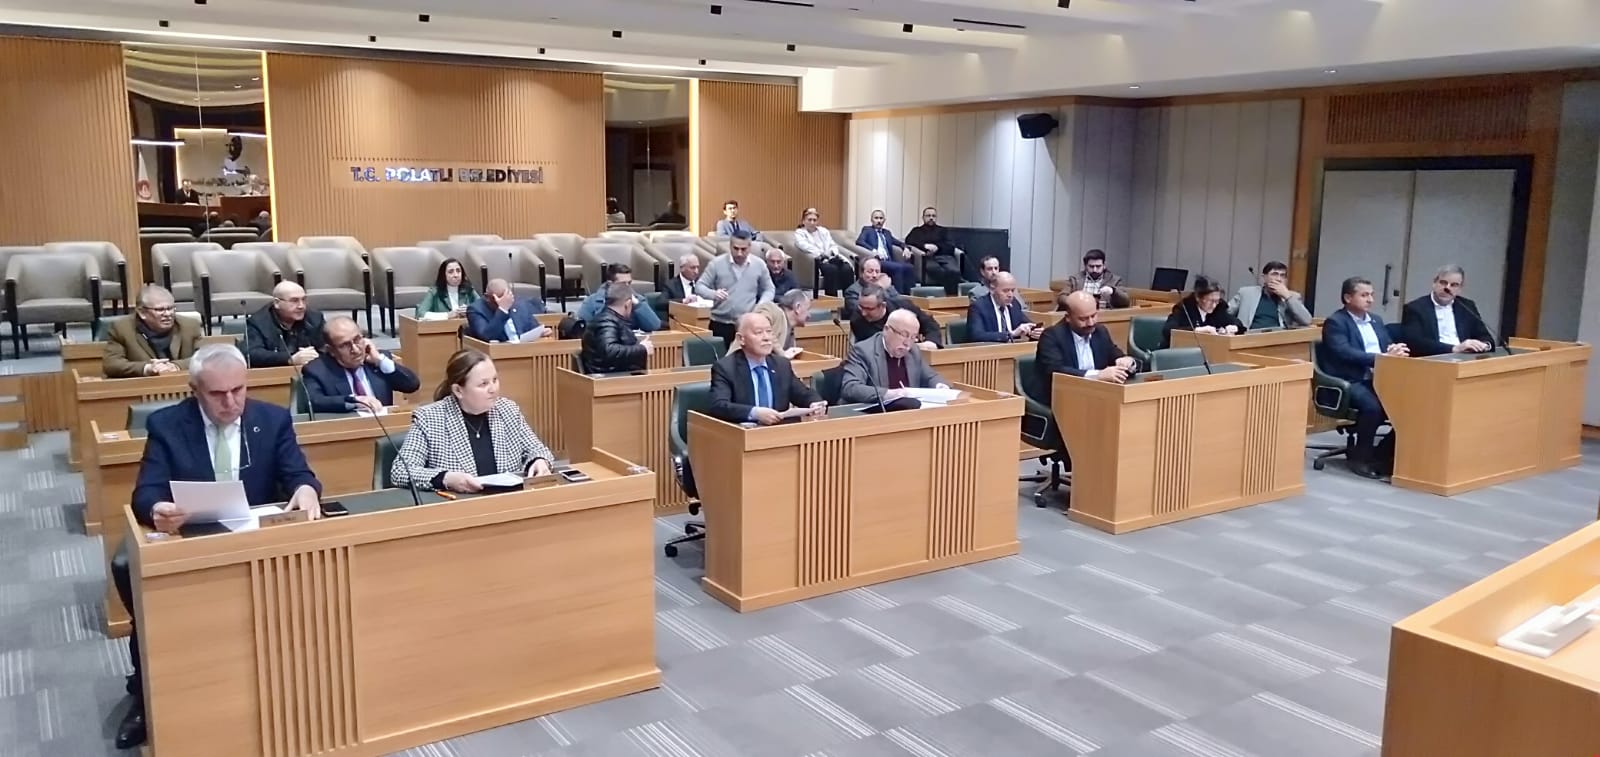 Polatlı Belediyesi Şubat Ayı Ikinci Meclis Toplantısı (2)